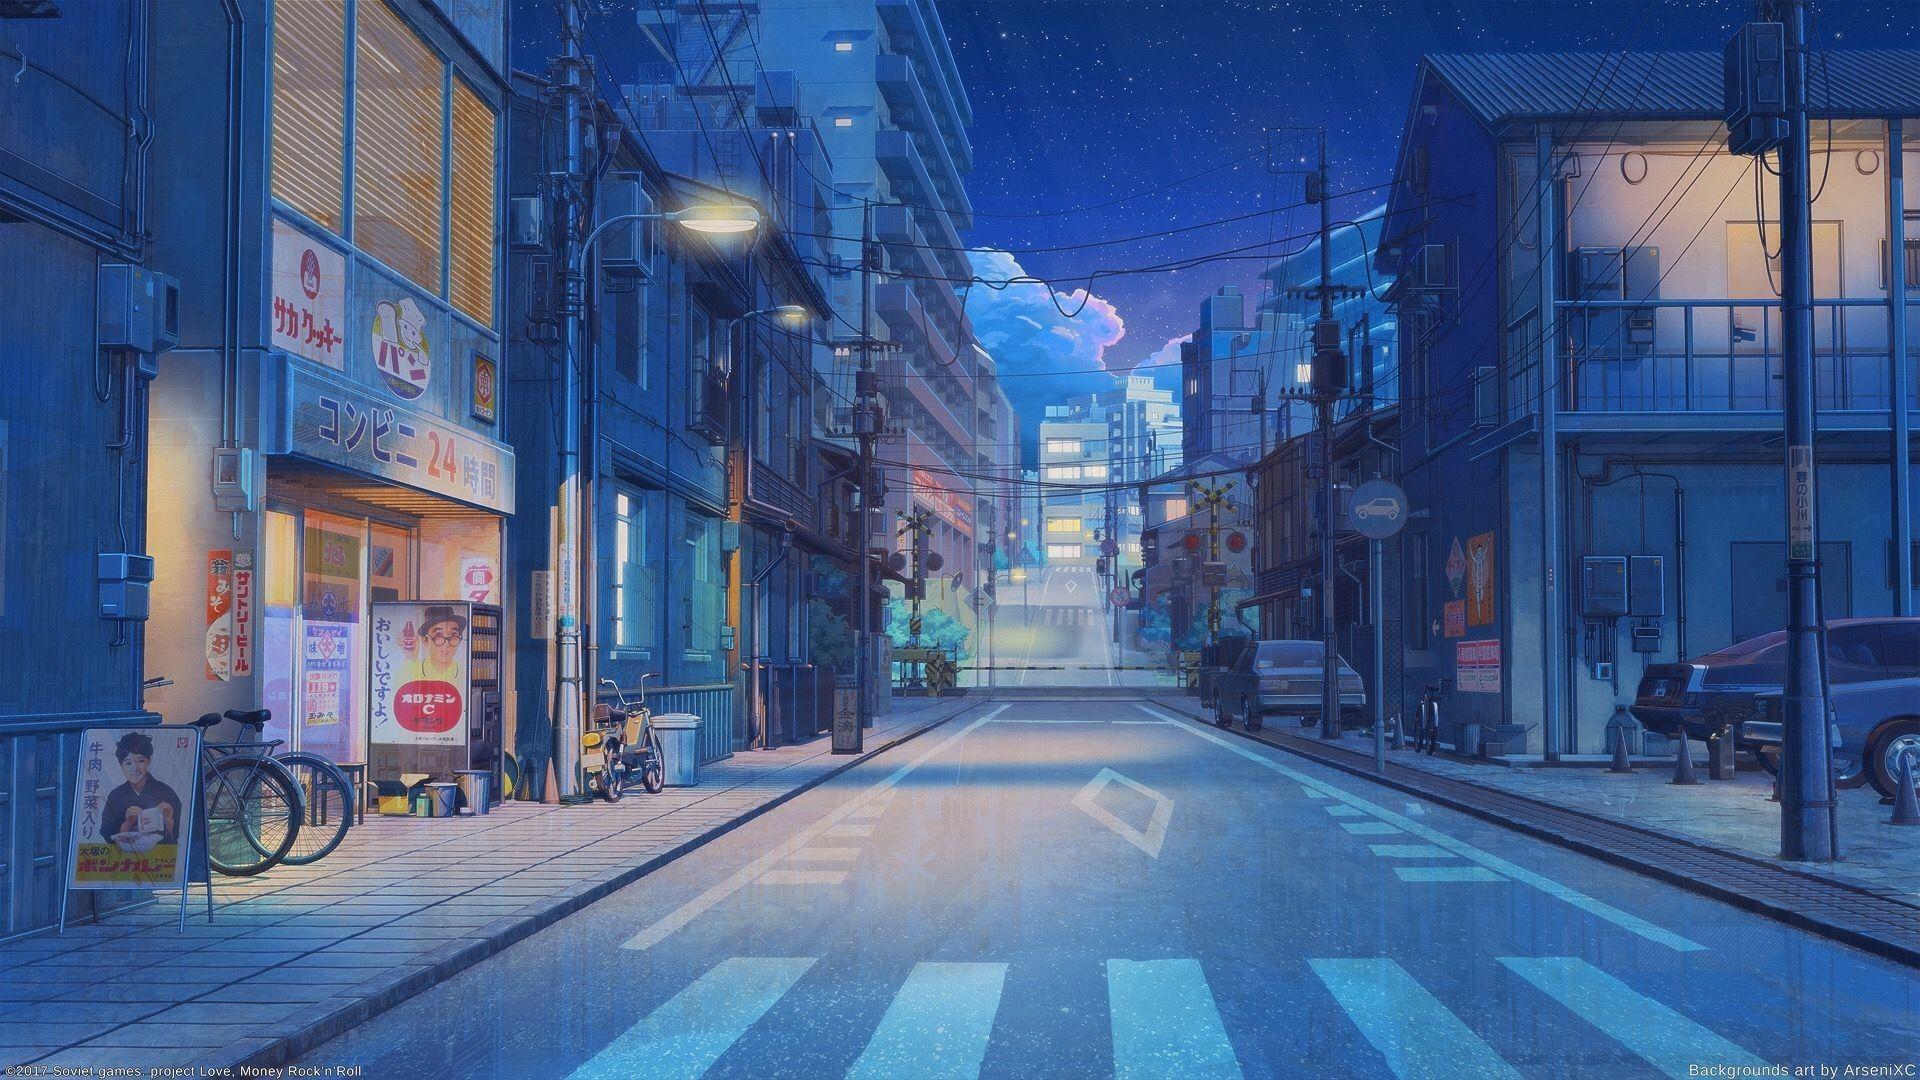 Hình ảnh về Aesthetic anime city wallpapers chắc chắn sẽ khiến bạn tò mò và muốn khám phá thêm về những thiết kế này. Với những bức ảnh đầy màu sắc, bạn chắc chắn sẽ tìm được đúng không gian sống mơ ước.